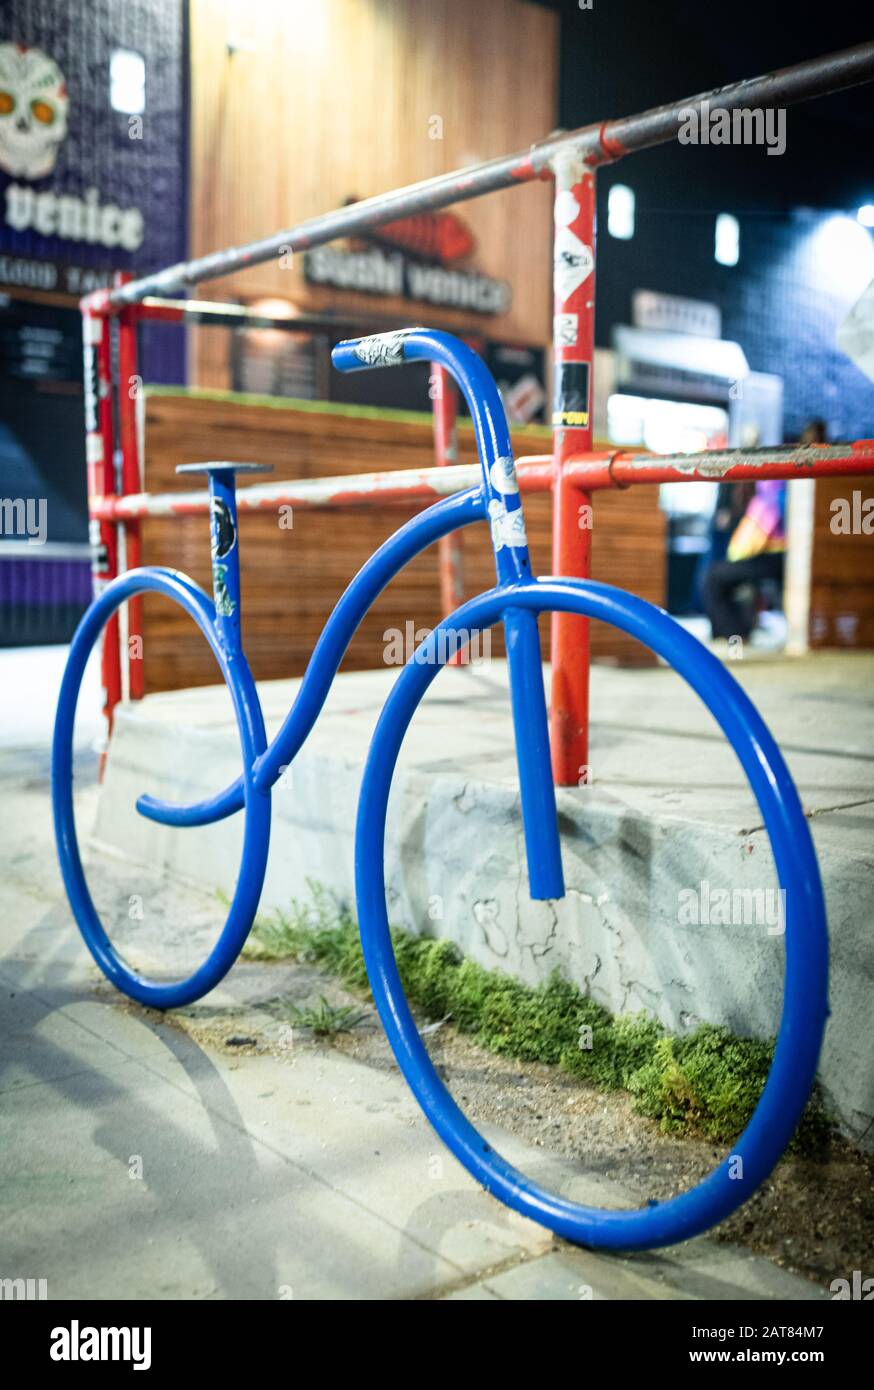 Un'installazione d'arte moderna a Venezia, California, con una bicicletta colorata di fronte a una recinzione e negozi. Foto Stock